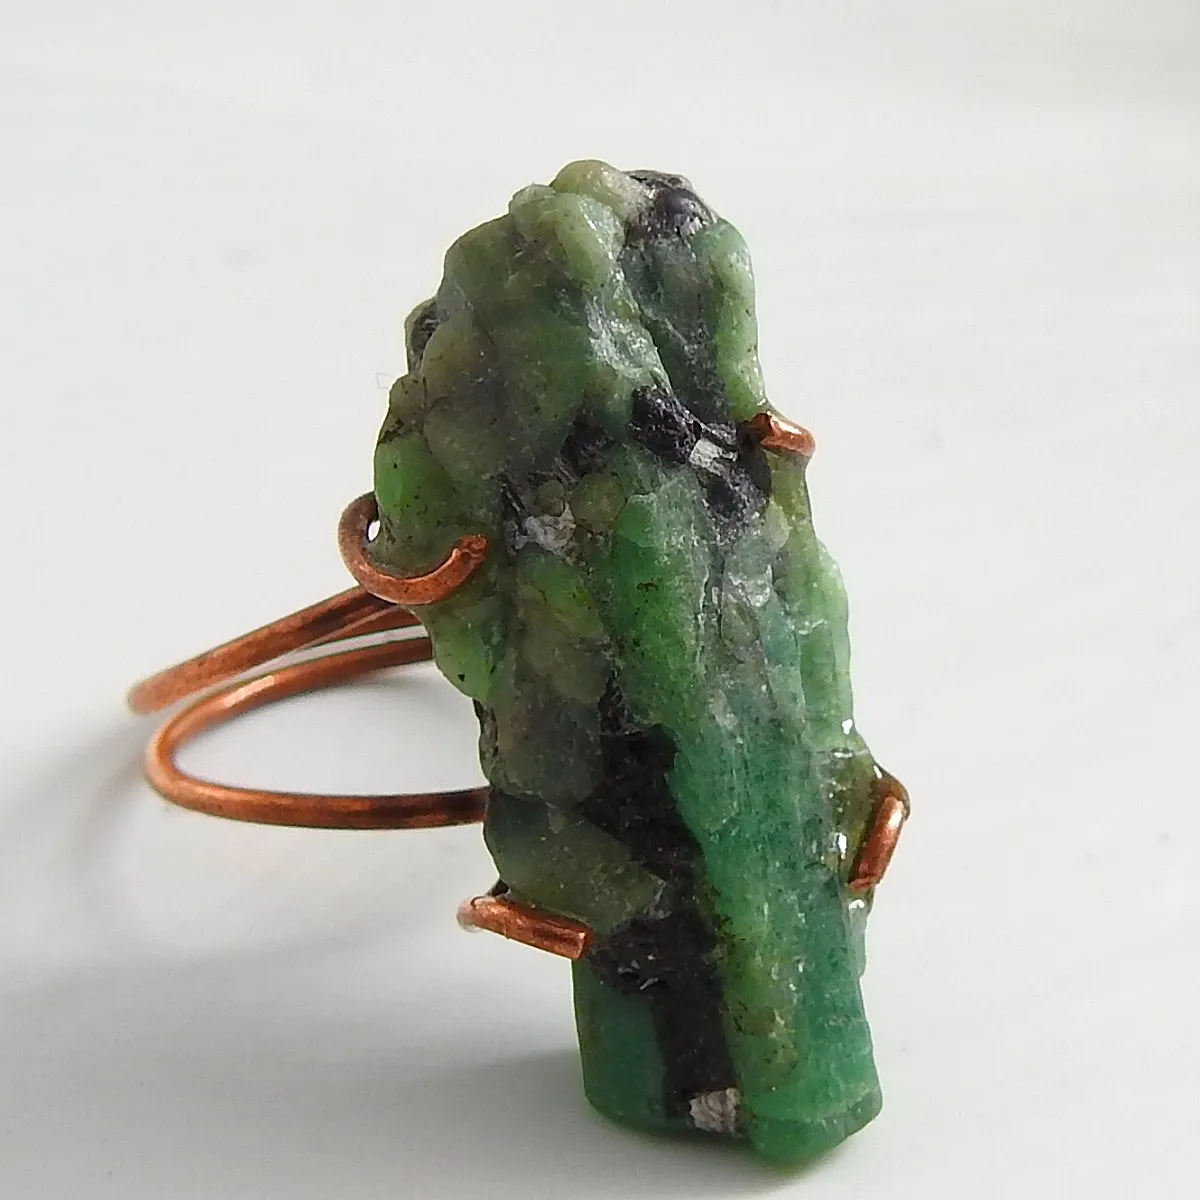 Emerald Natuurlijke Ruwe Koperen Ring, Cadeau Voor Haar, Unieke Items, Een Van Een Soort, Handgemaakte, kristal, Mineralen, Groothandelaar, Benodigdheden,